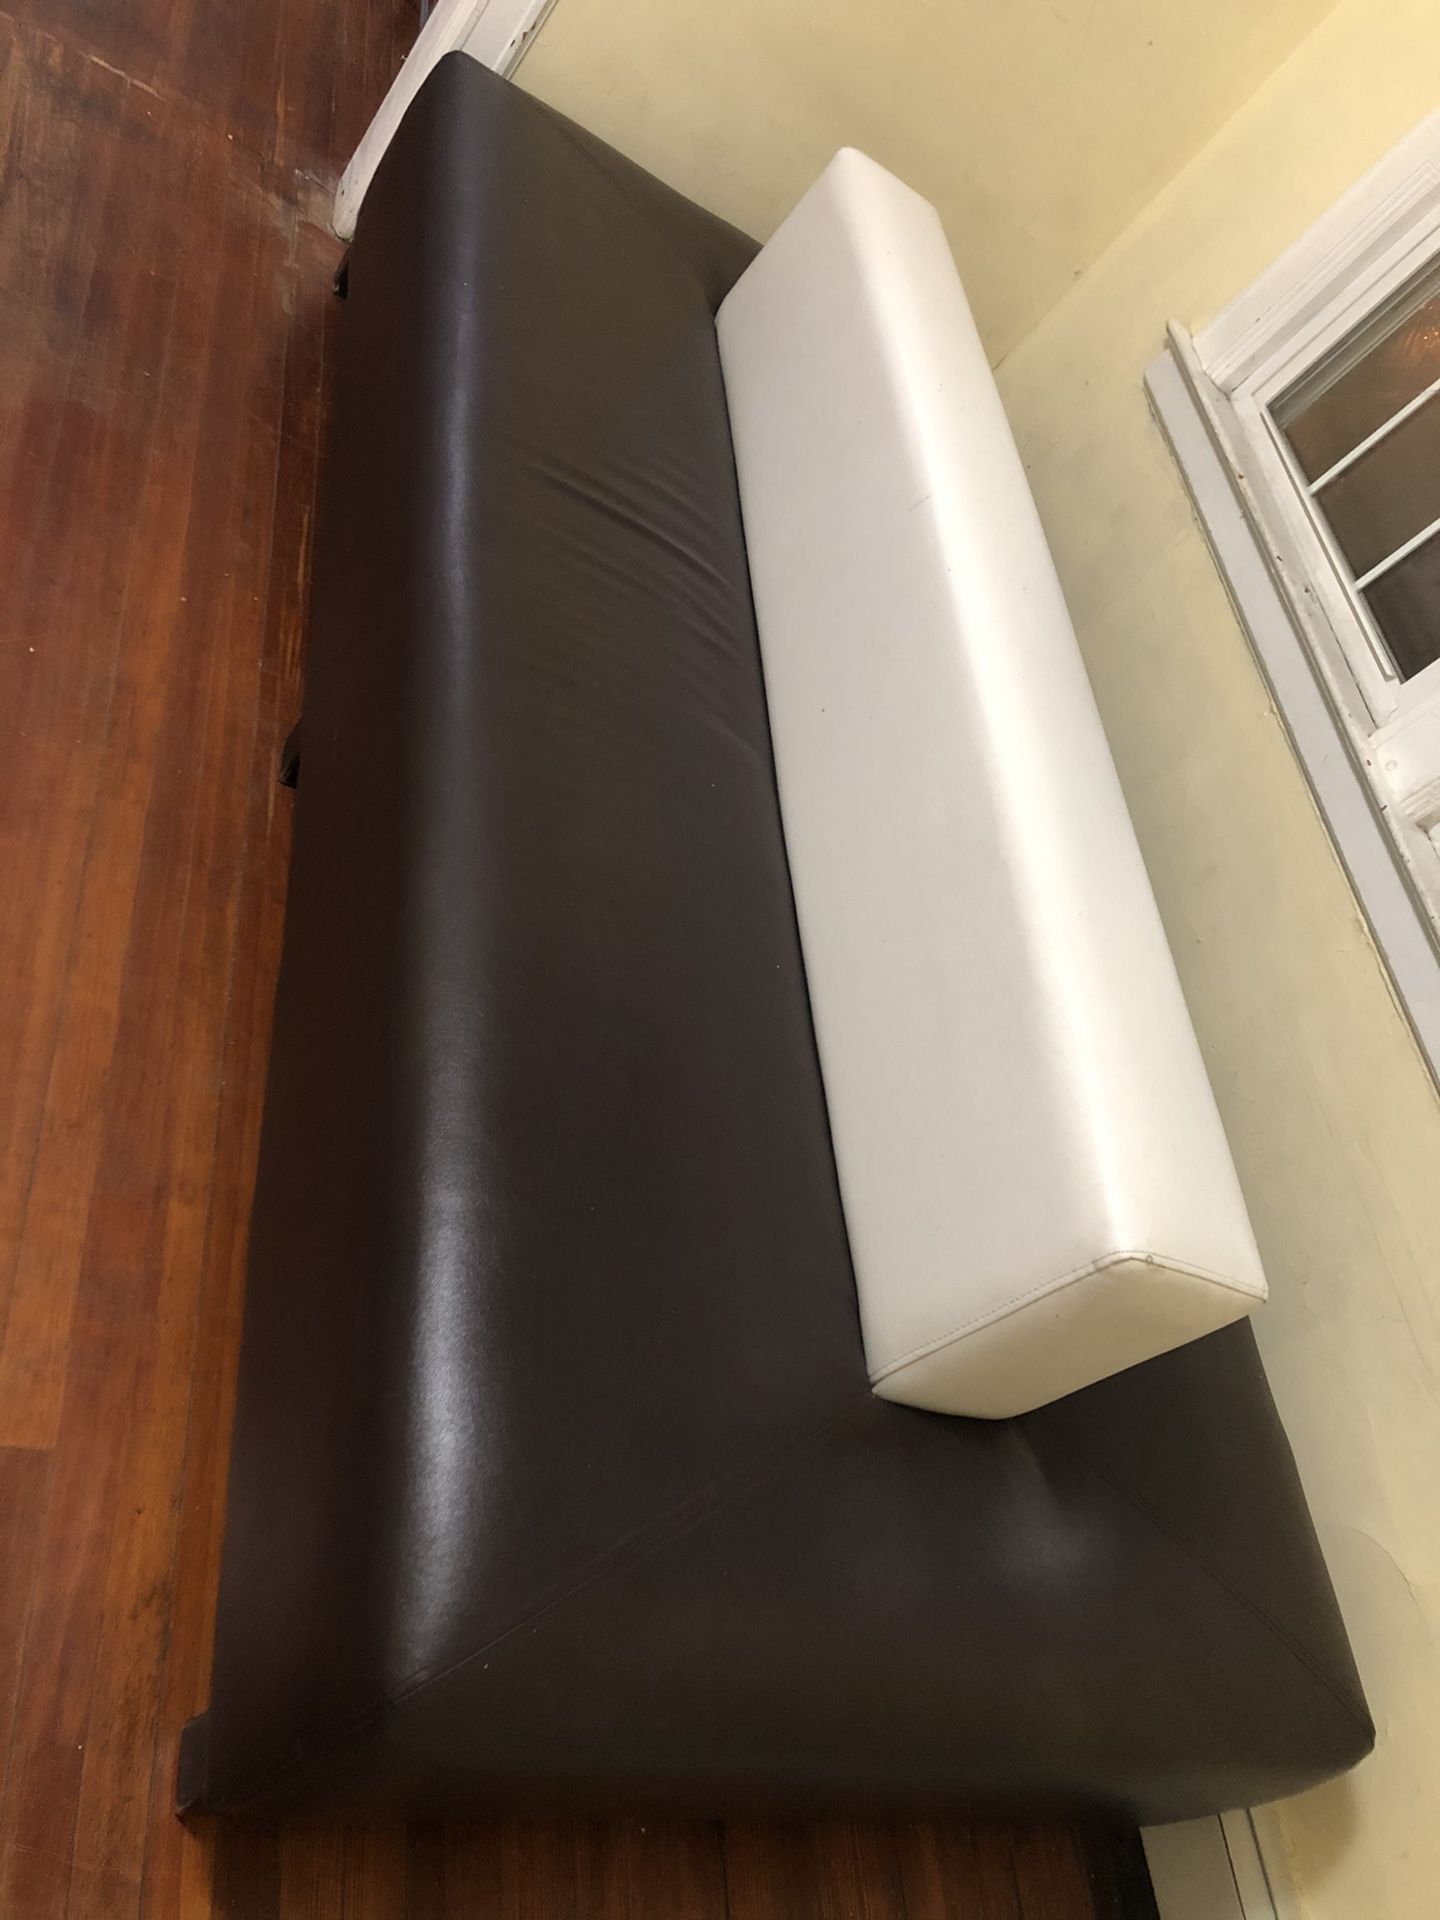 Large leather sofa